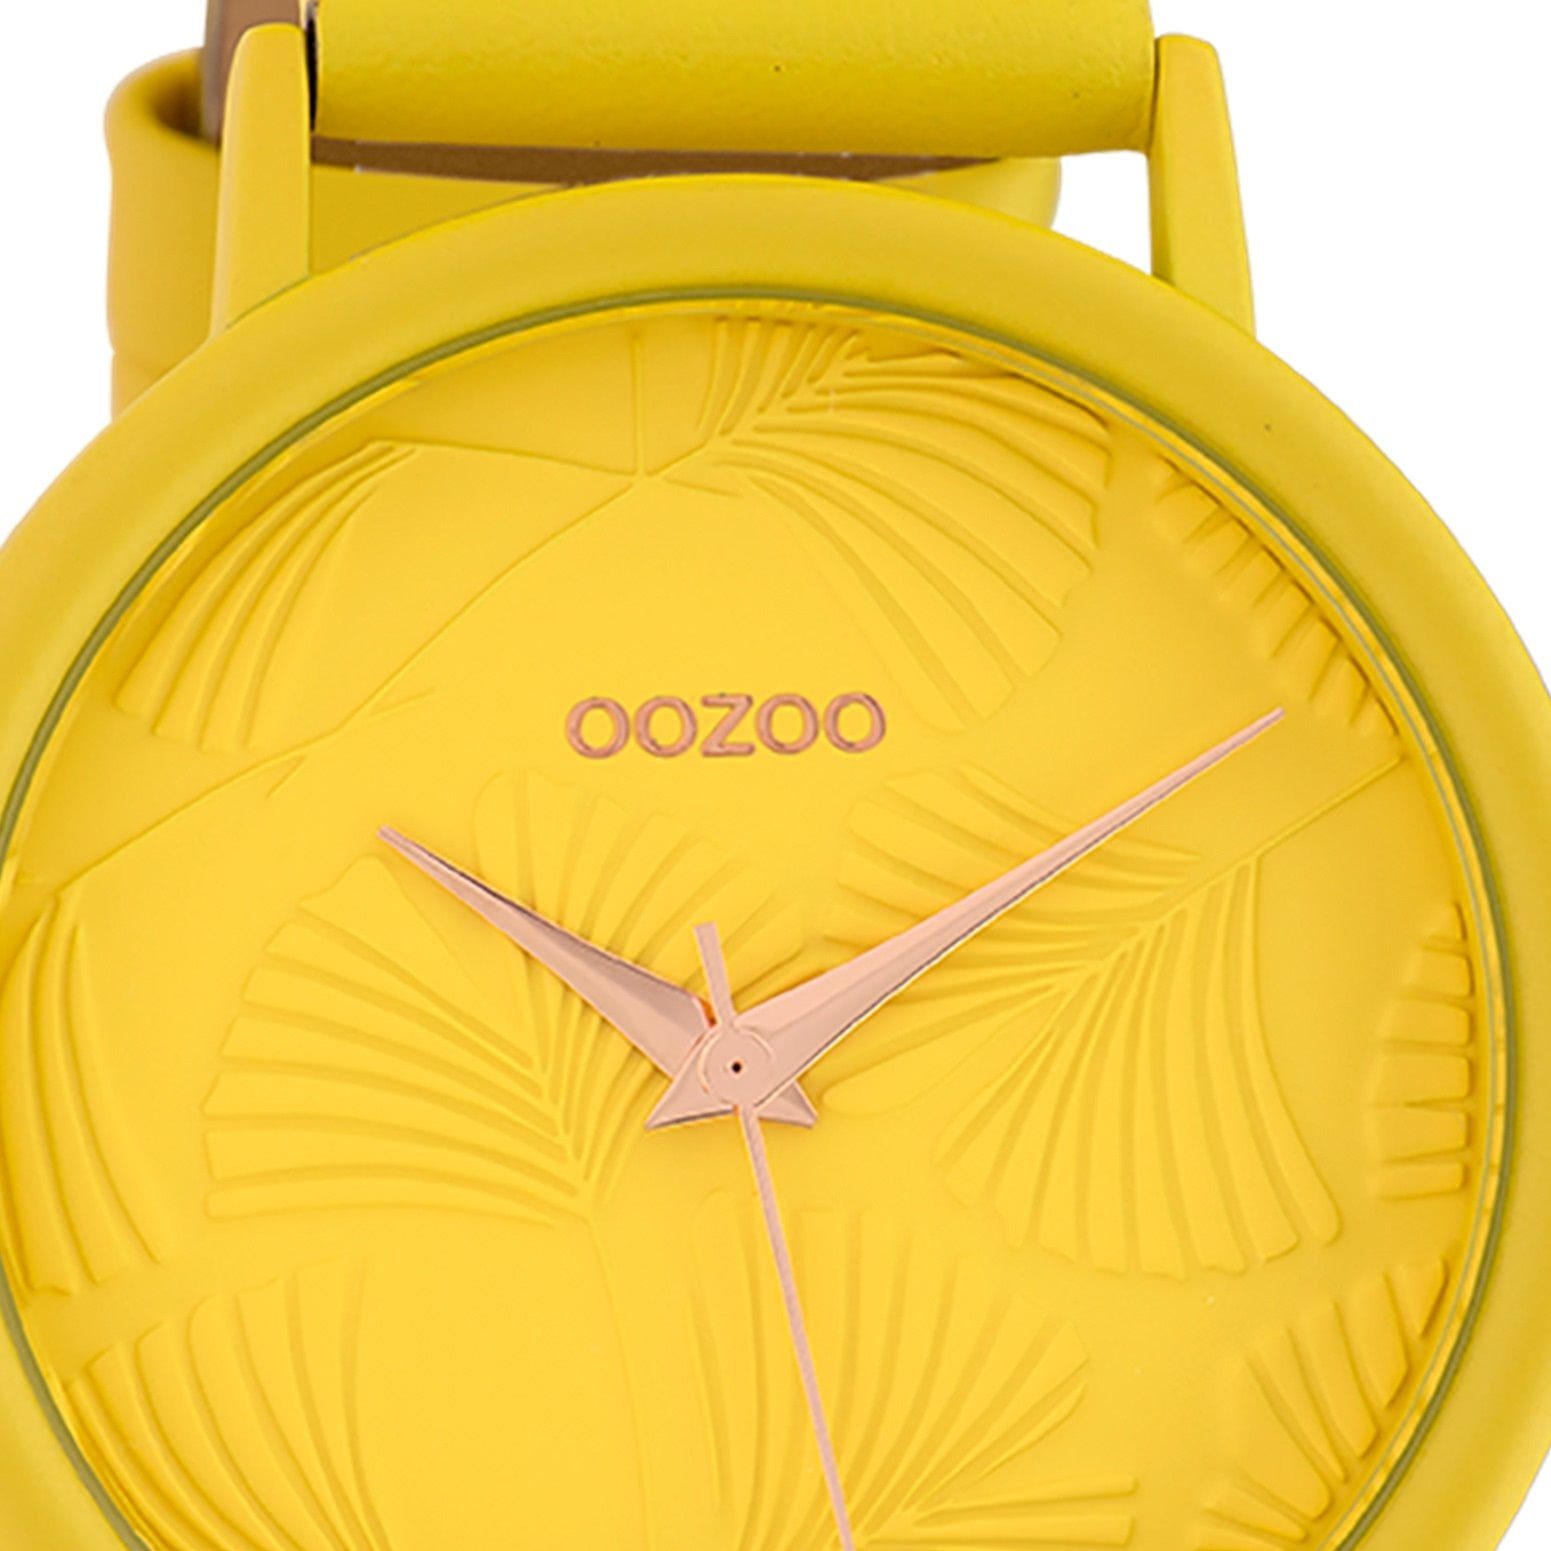 Damenuhr Quarzuhr Fashion 42mm), Damen gelb, gelb, (ca. groß Oozoo OOZOO Armbanduhr Lederarmband rund,